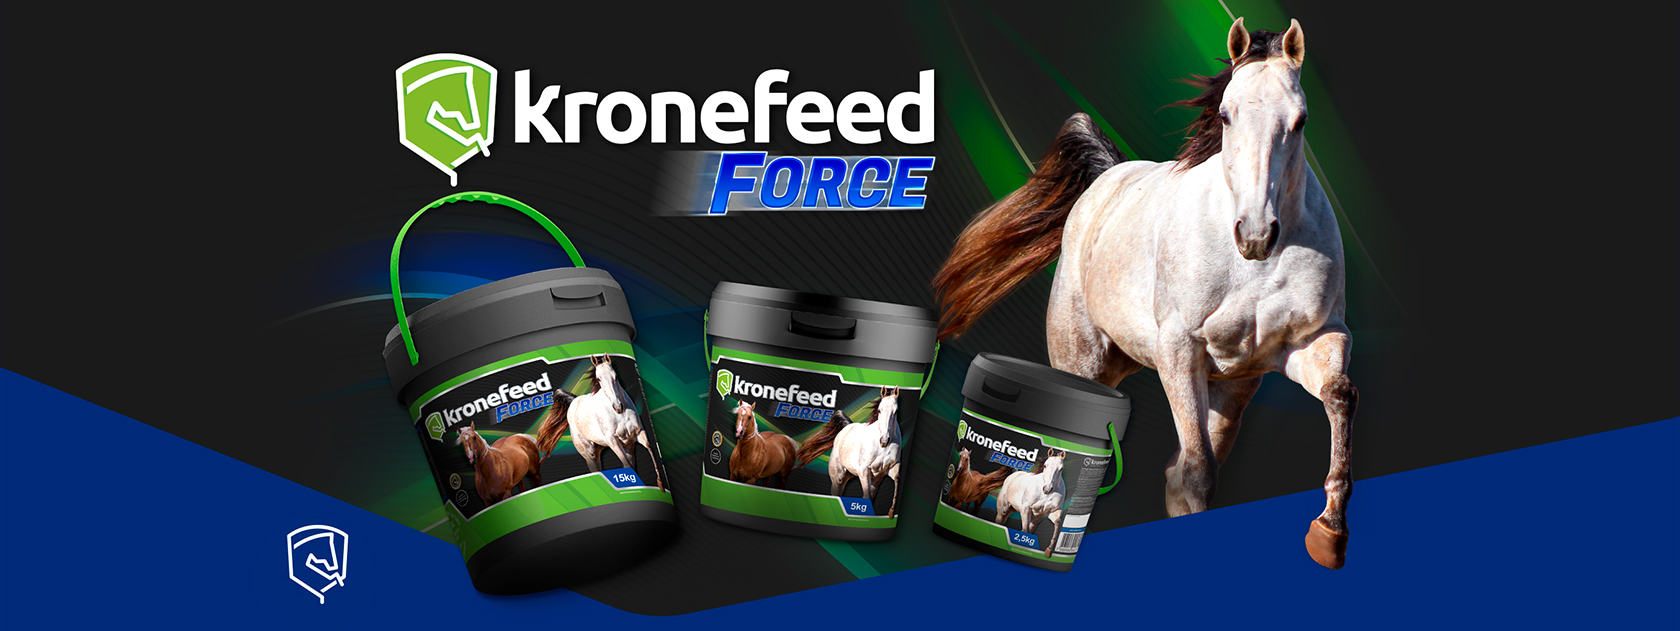 Banner da Kronefeed Force apresentando as três embalagens dos produtos em 2,5kg, 5kg e 15kg, com imagem de cavalo branco